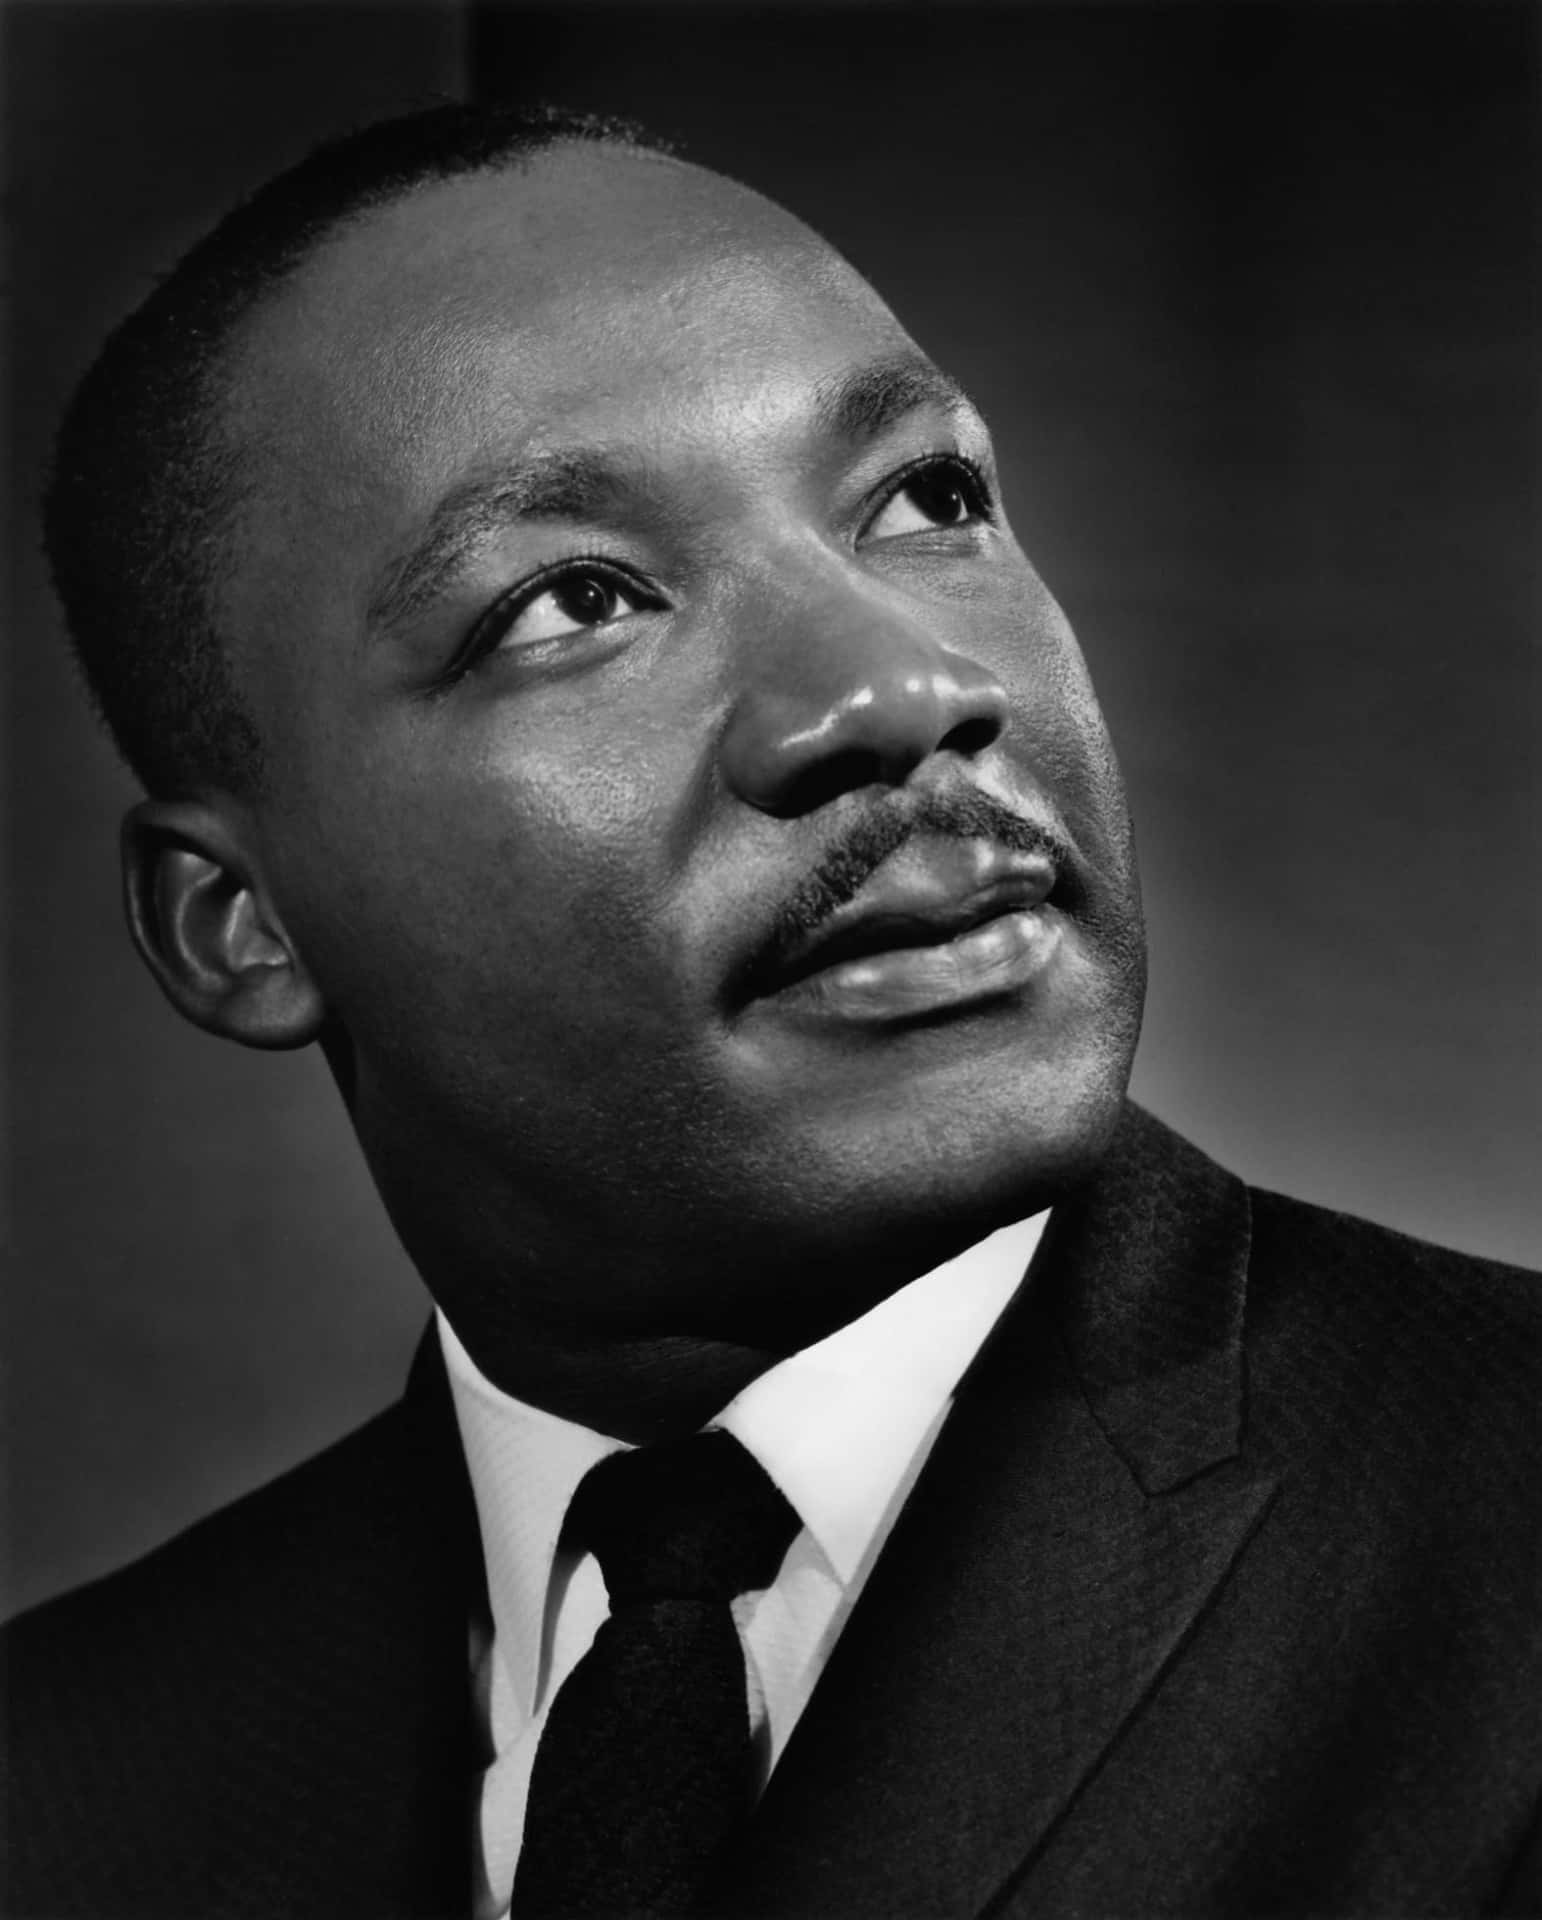 Porträttbildav Martin Luther King Jr.